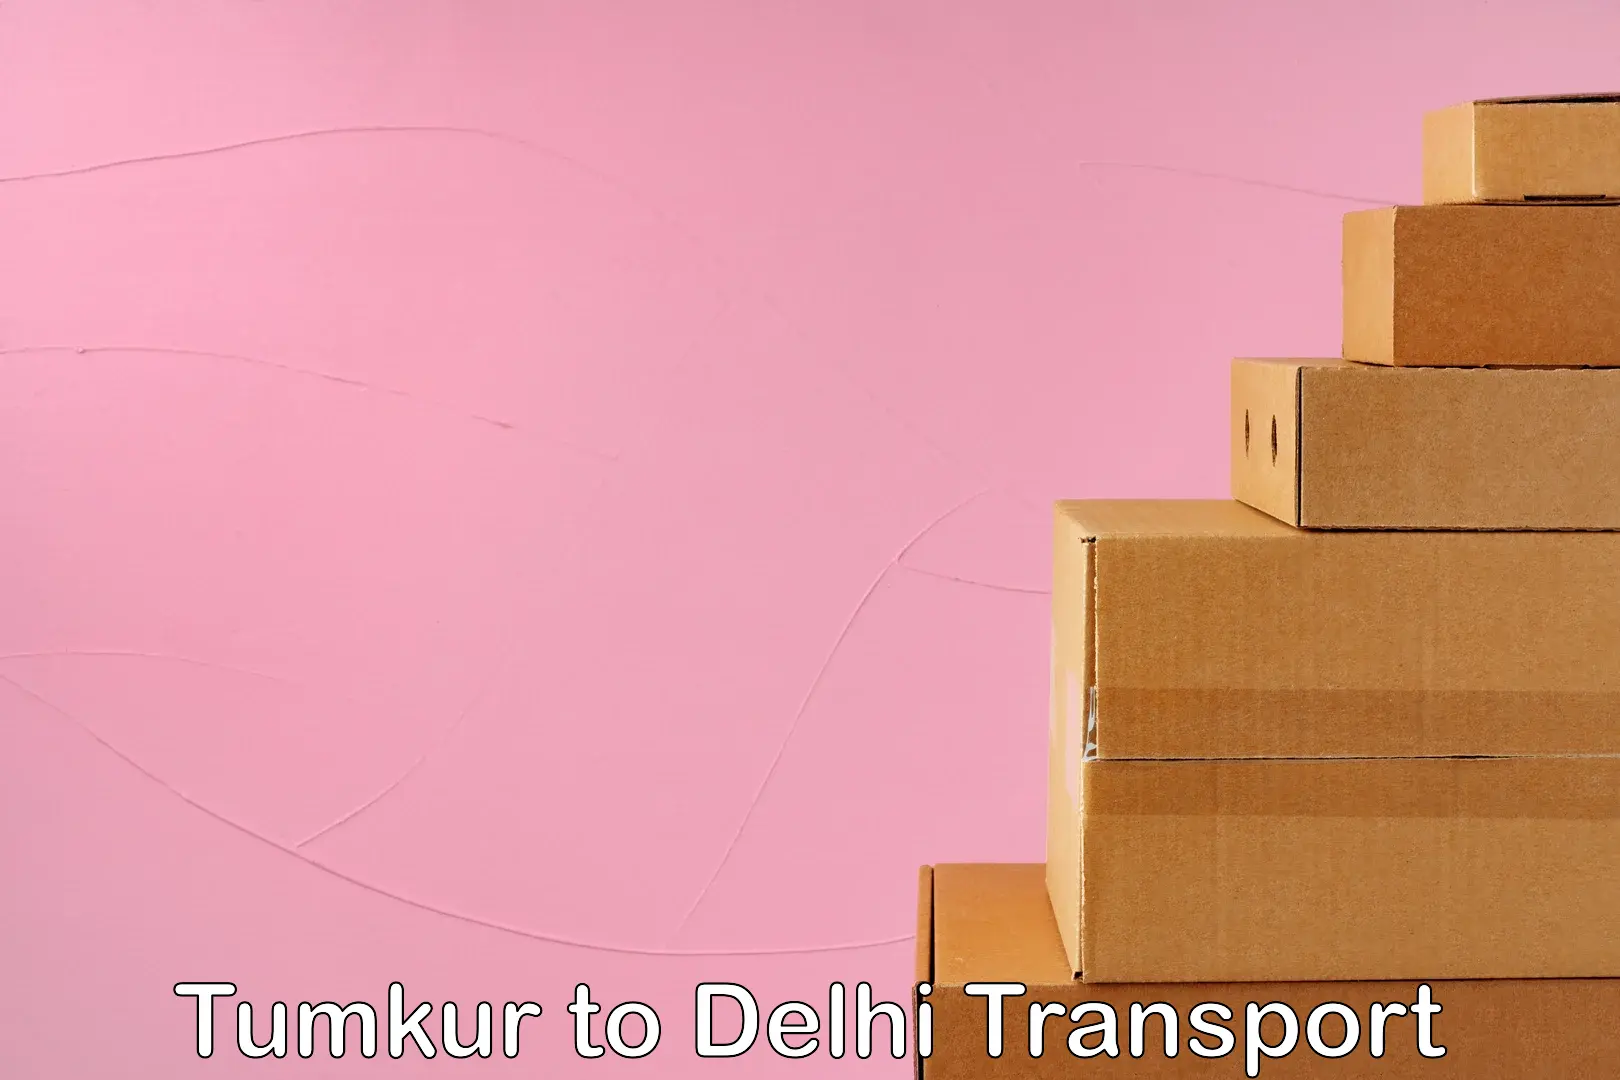 Bike transport service Tumkur to Delhi